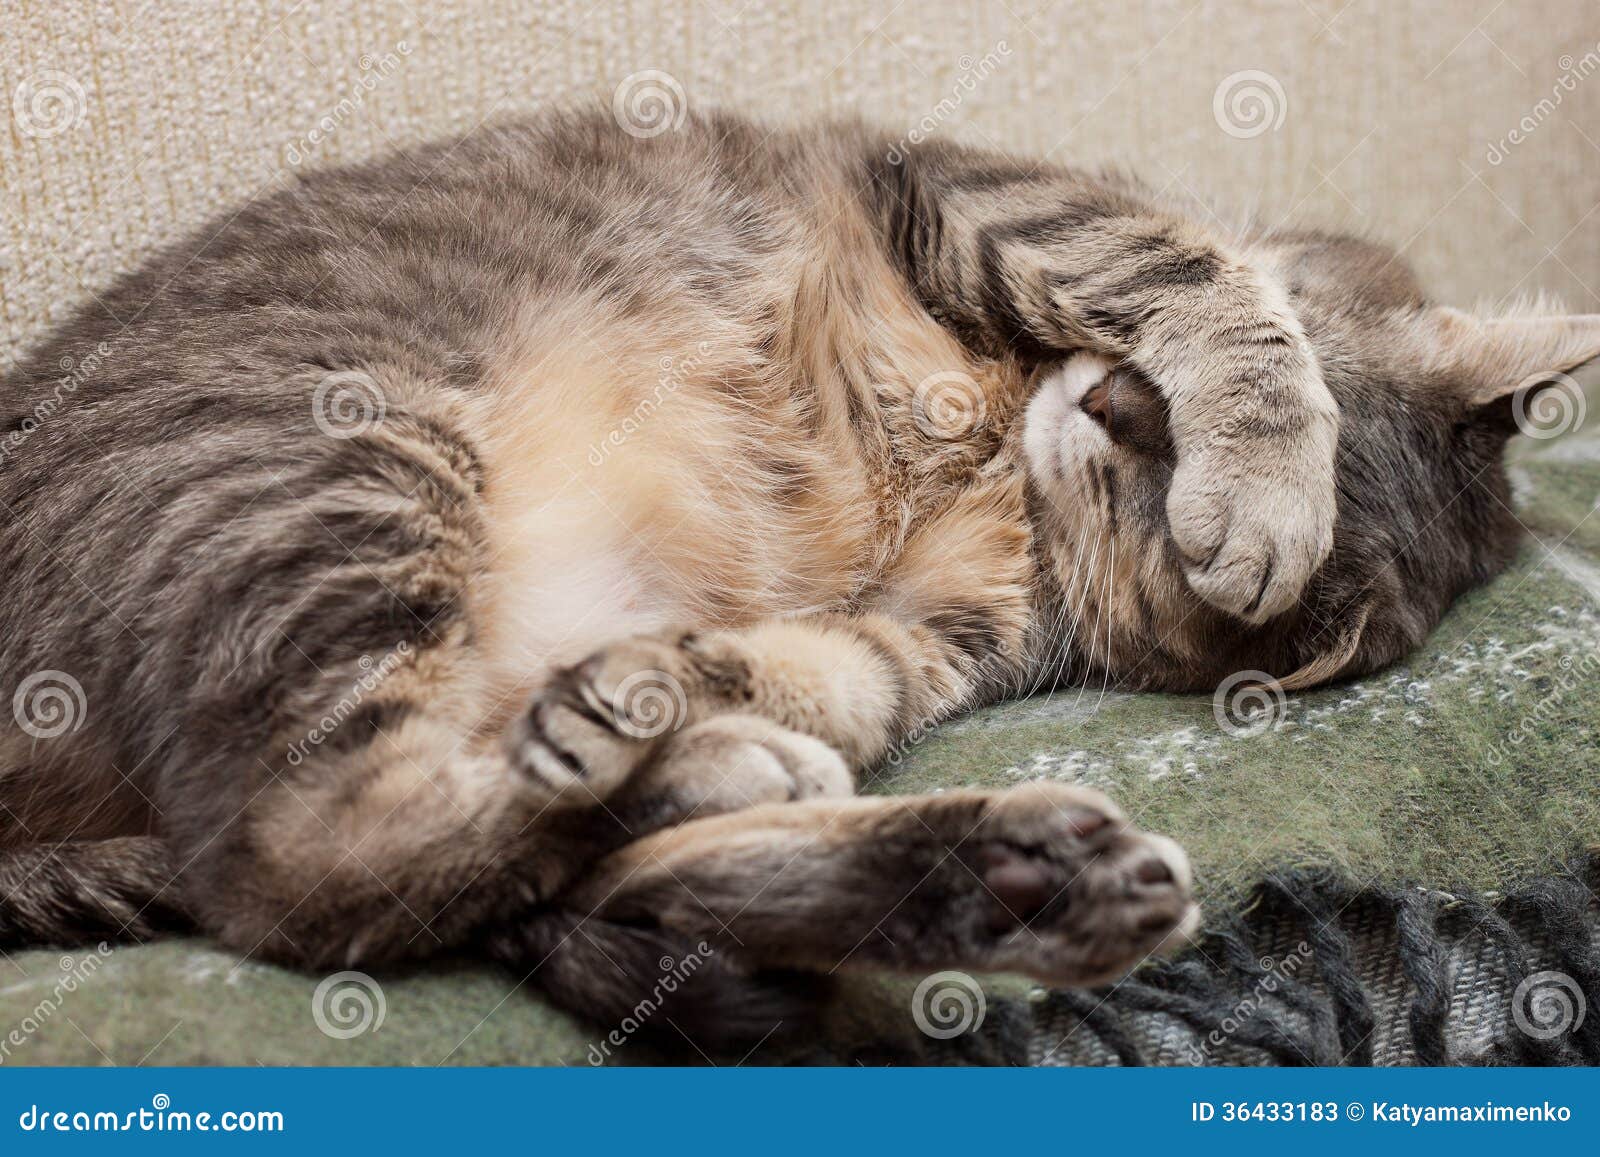 10,000+张最精彩的“猫睡觉”图片 · 100%免费下载 · Pexels素材图片